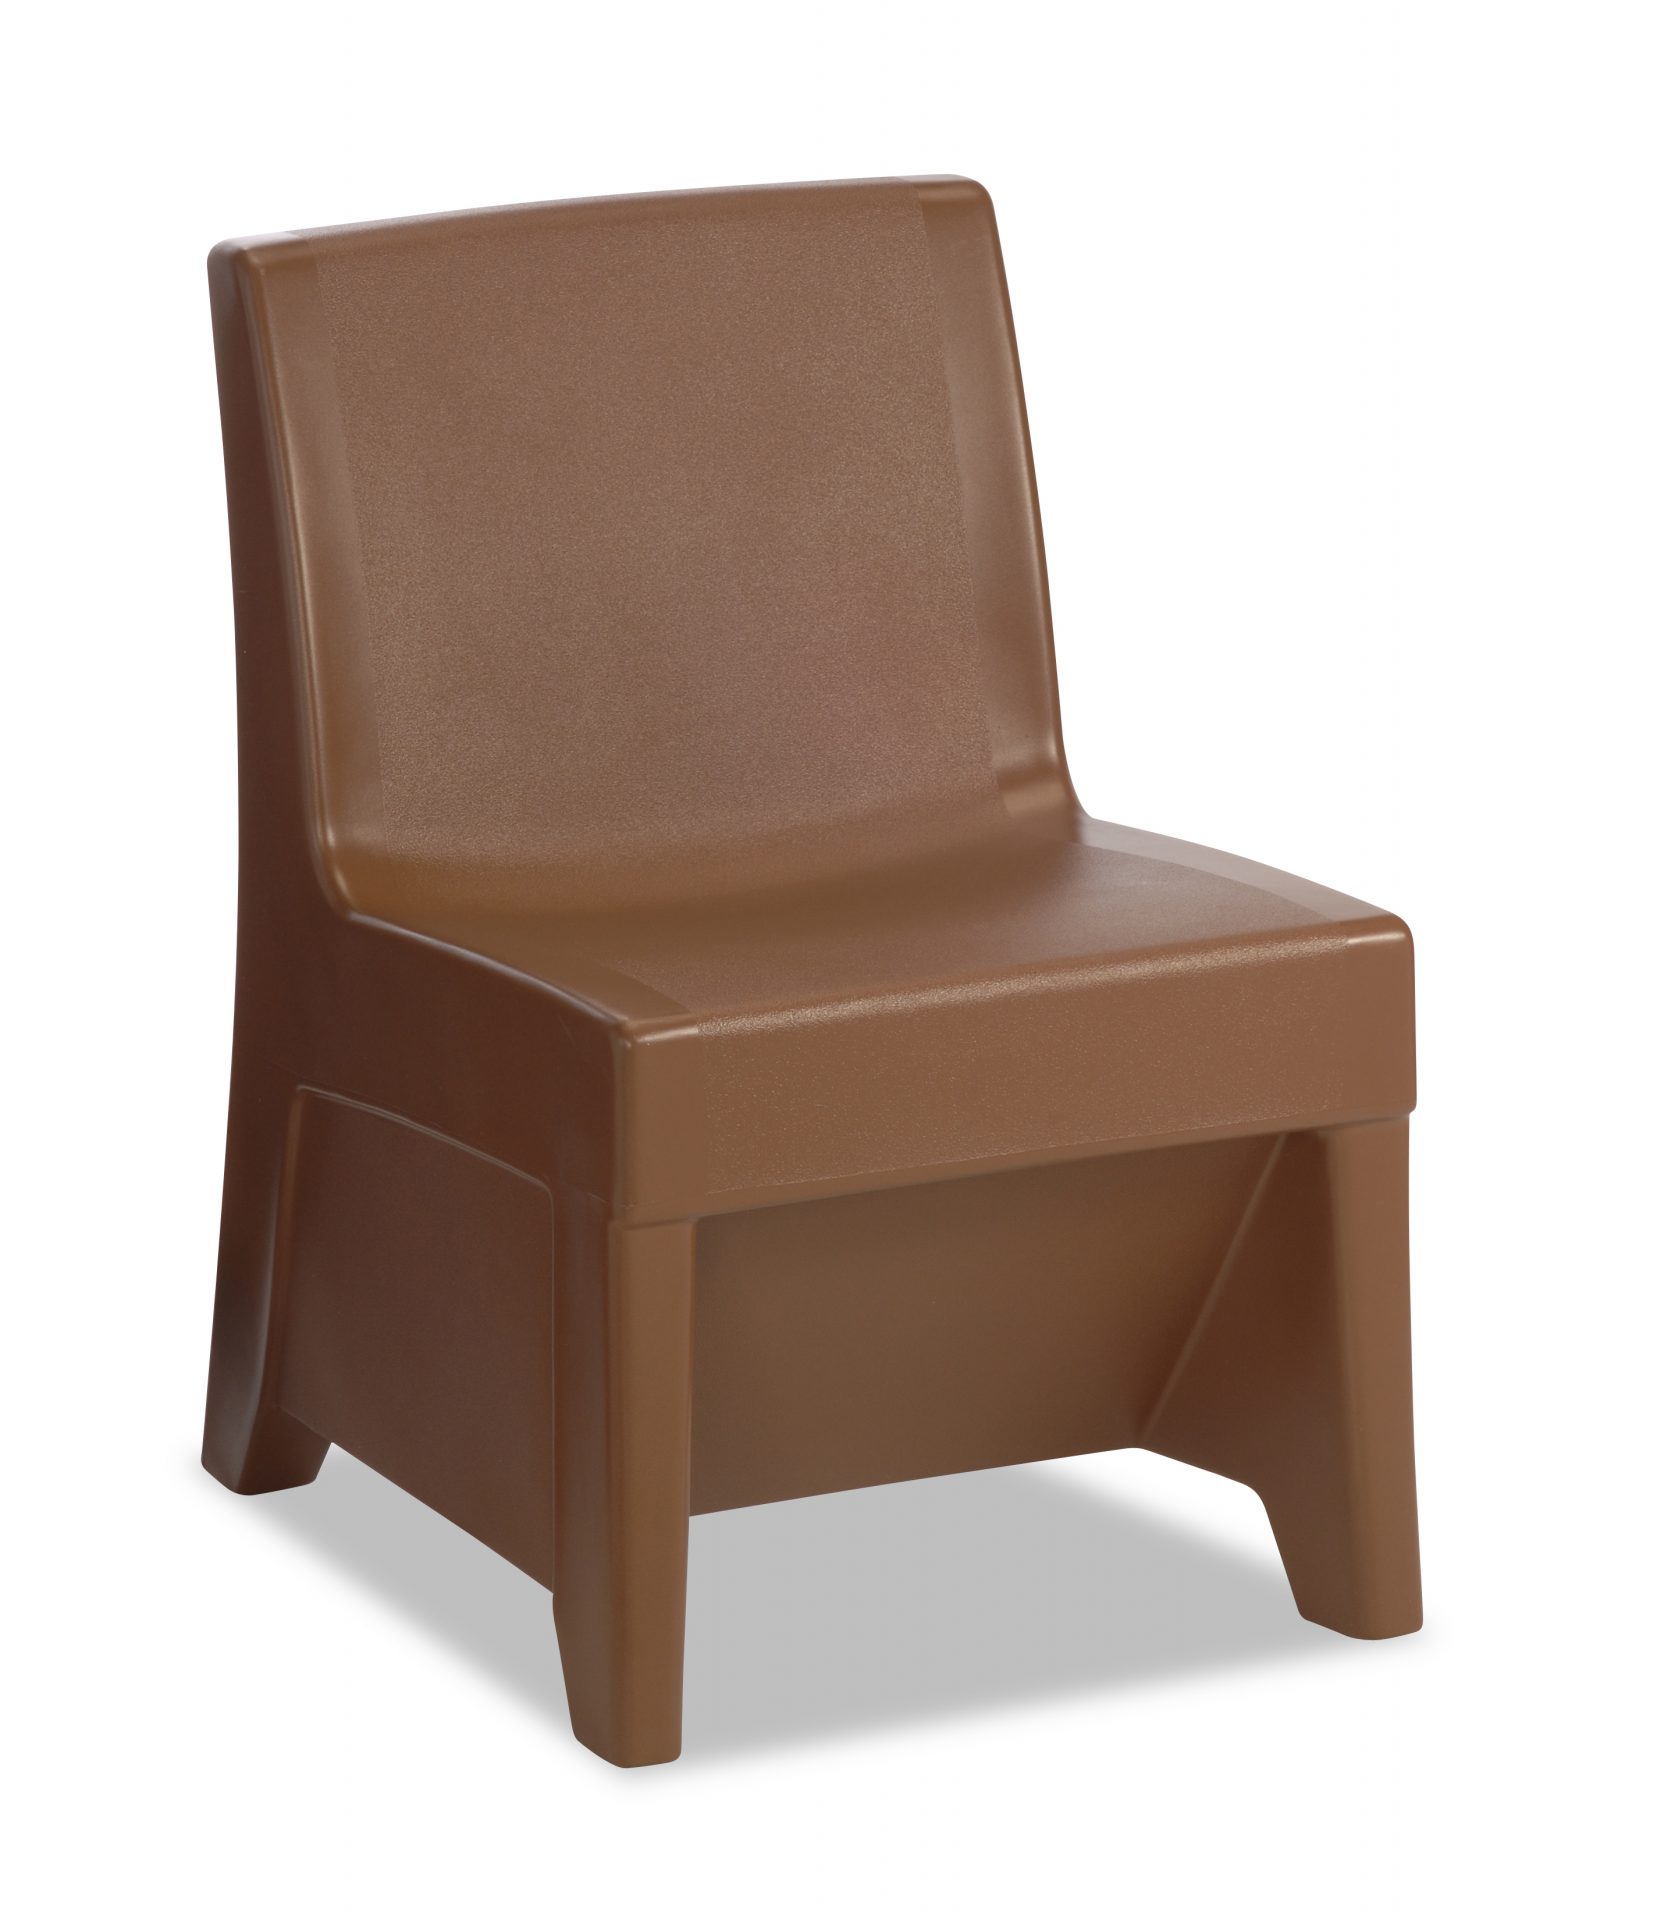 Pine Cone color ligature resistant chair